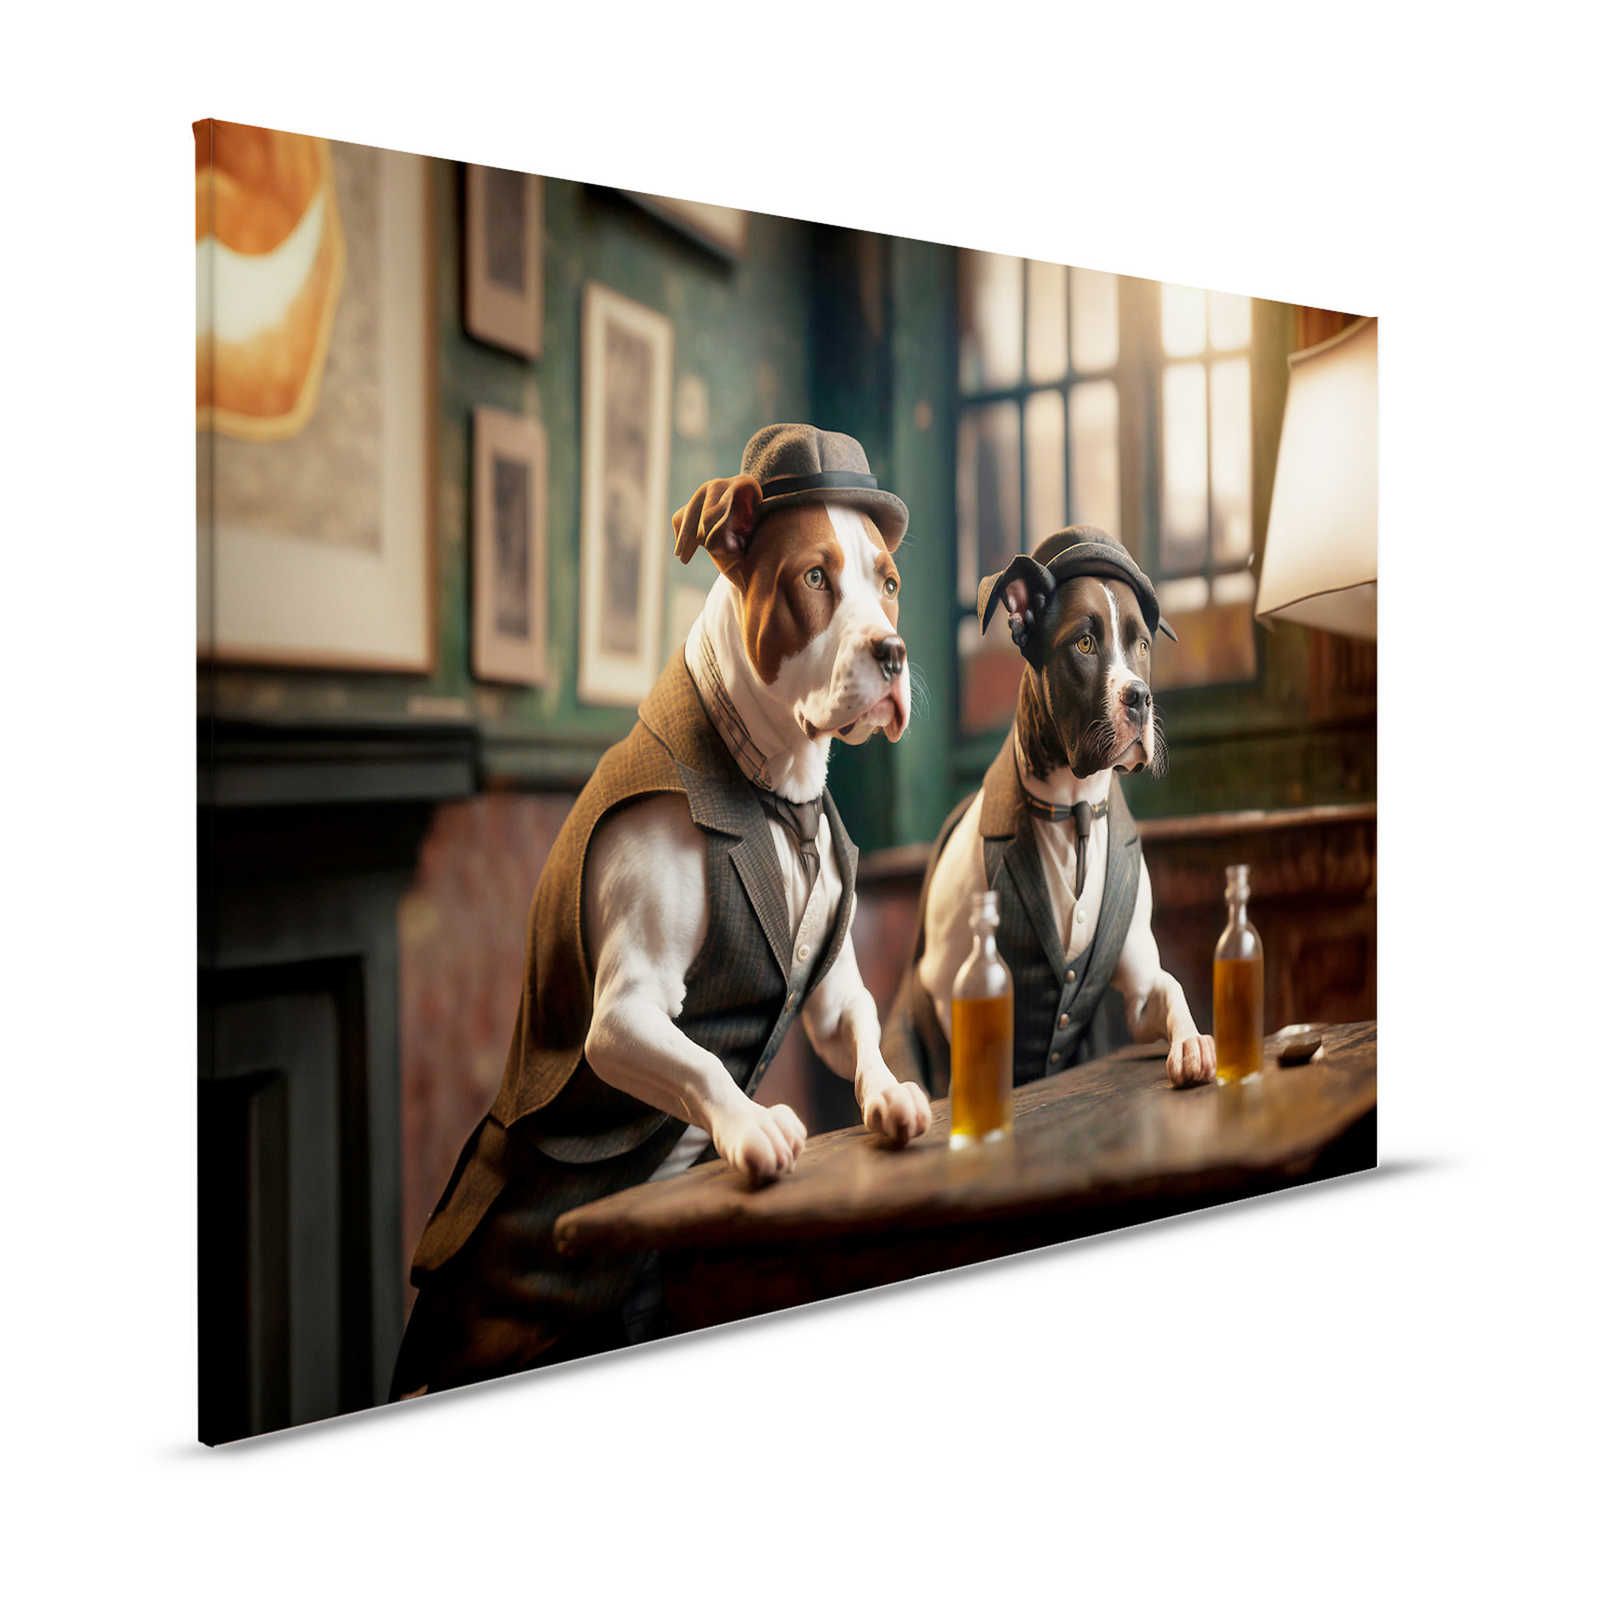 KI Pintura en lienzo »Doggy Bar 2« - 120 cm x 80 cm
